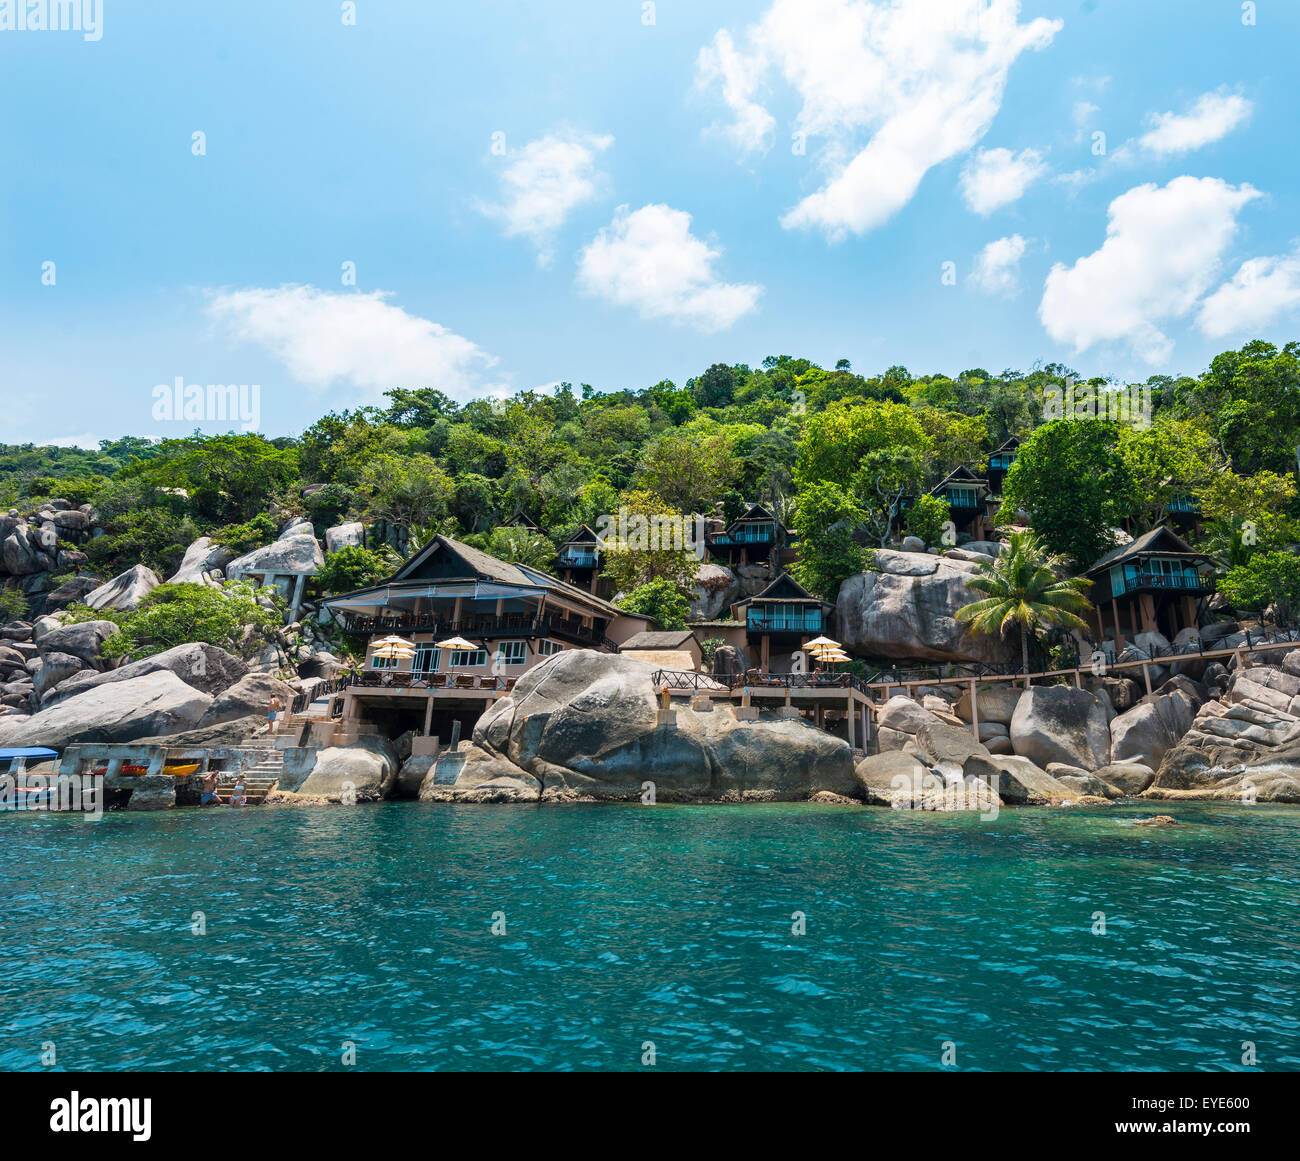 Maisons sur pilotis surplombant la mer, la mer turquoise, l'île de Koh Tao, Golfe de Thaïlande, Thaïlande Banque D'Images